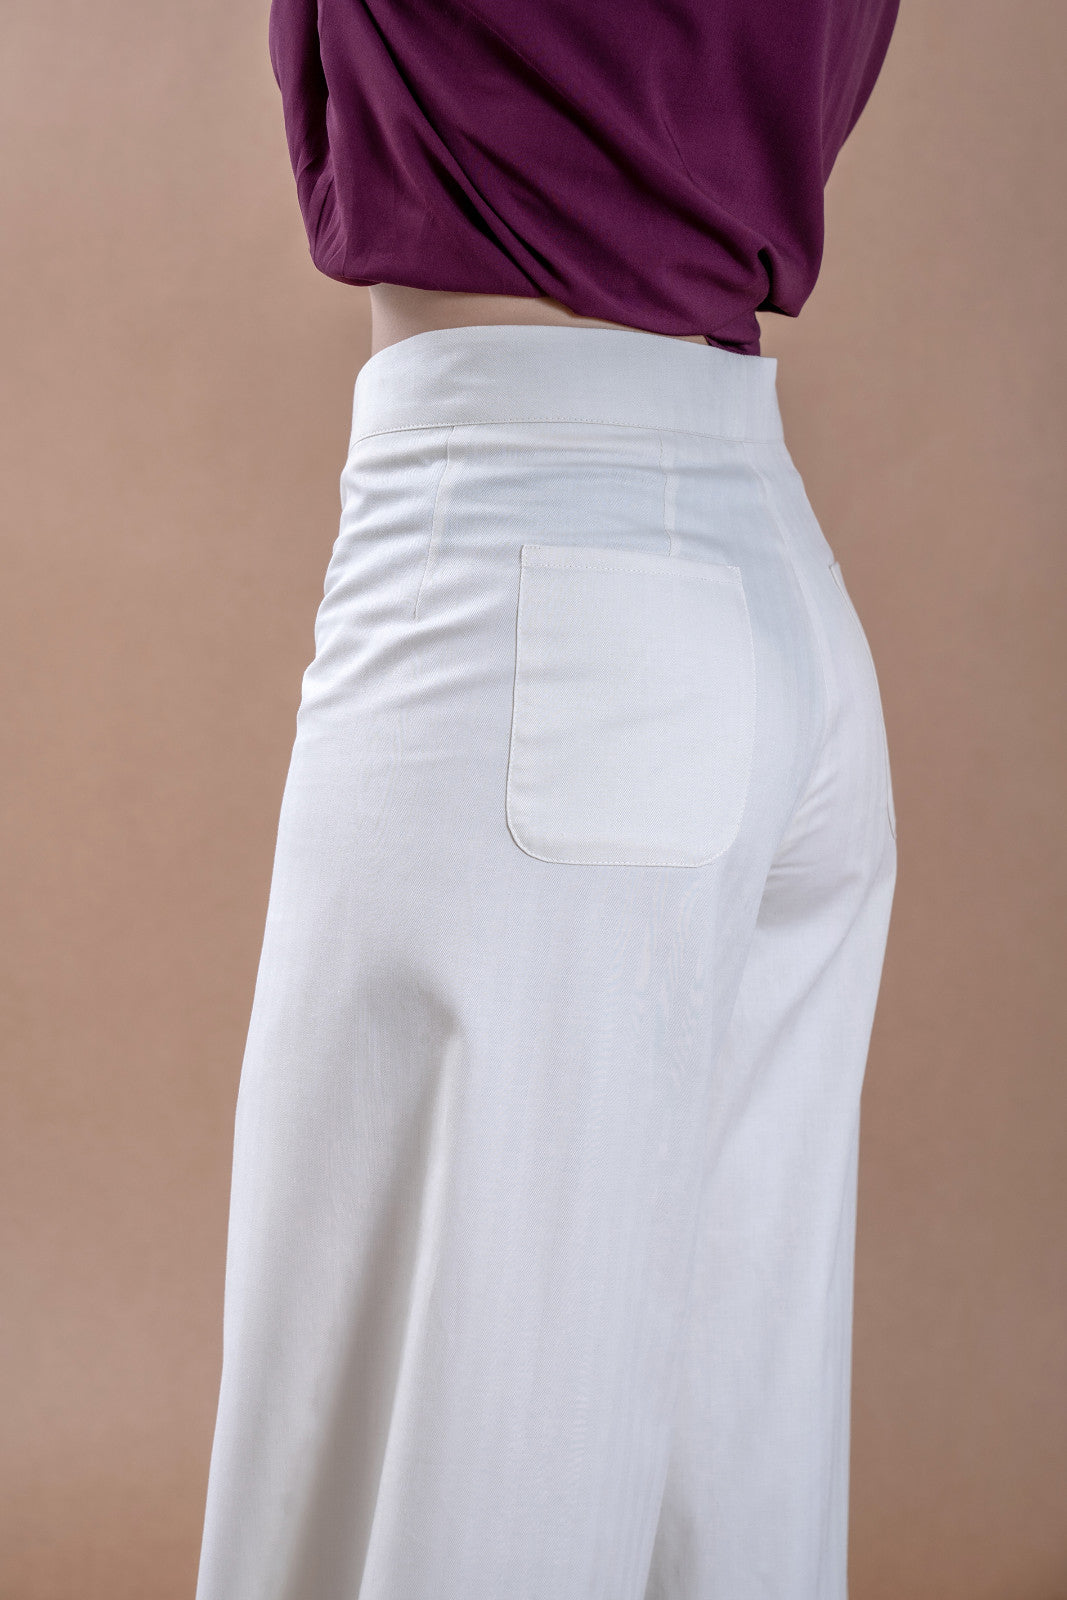 Levisez pantaloni tip clopot din bumbac natural pentru femei